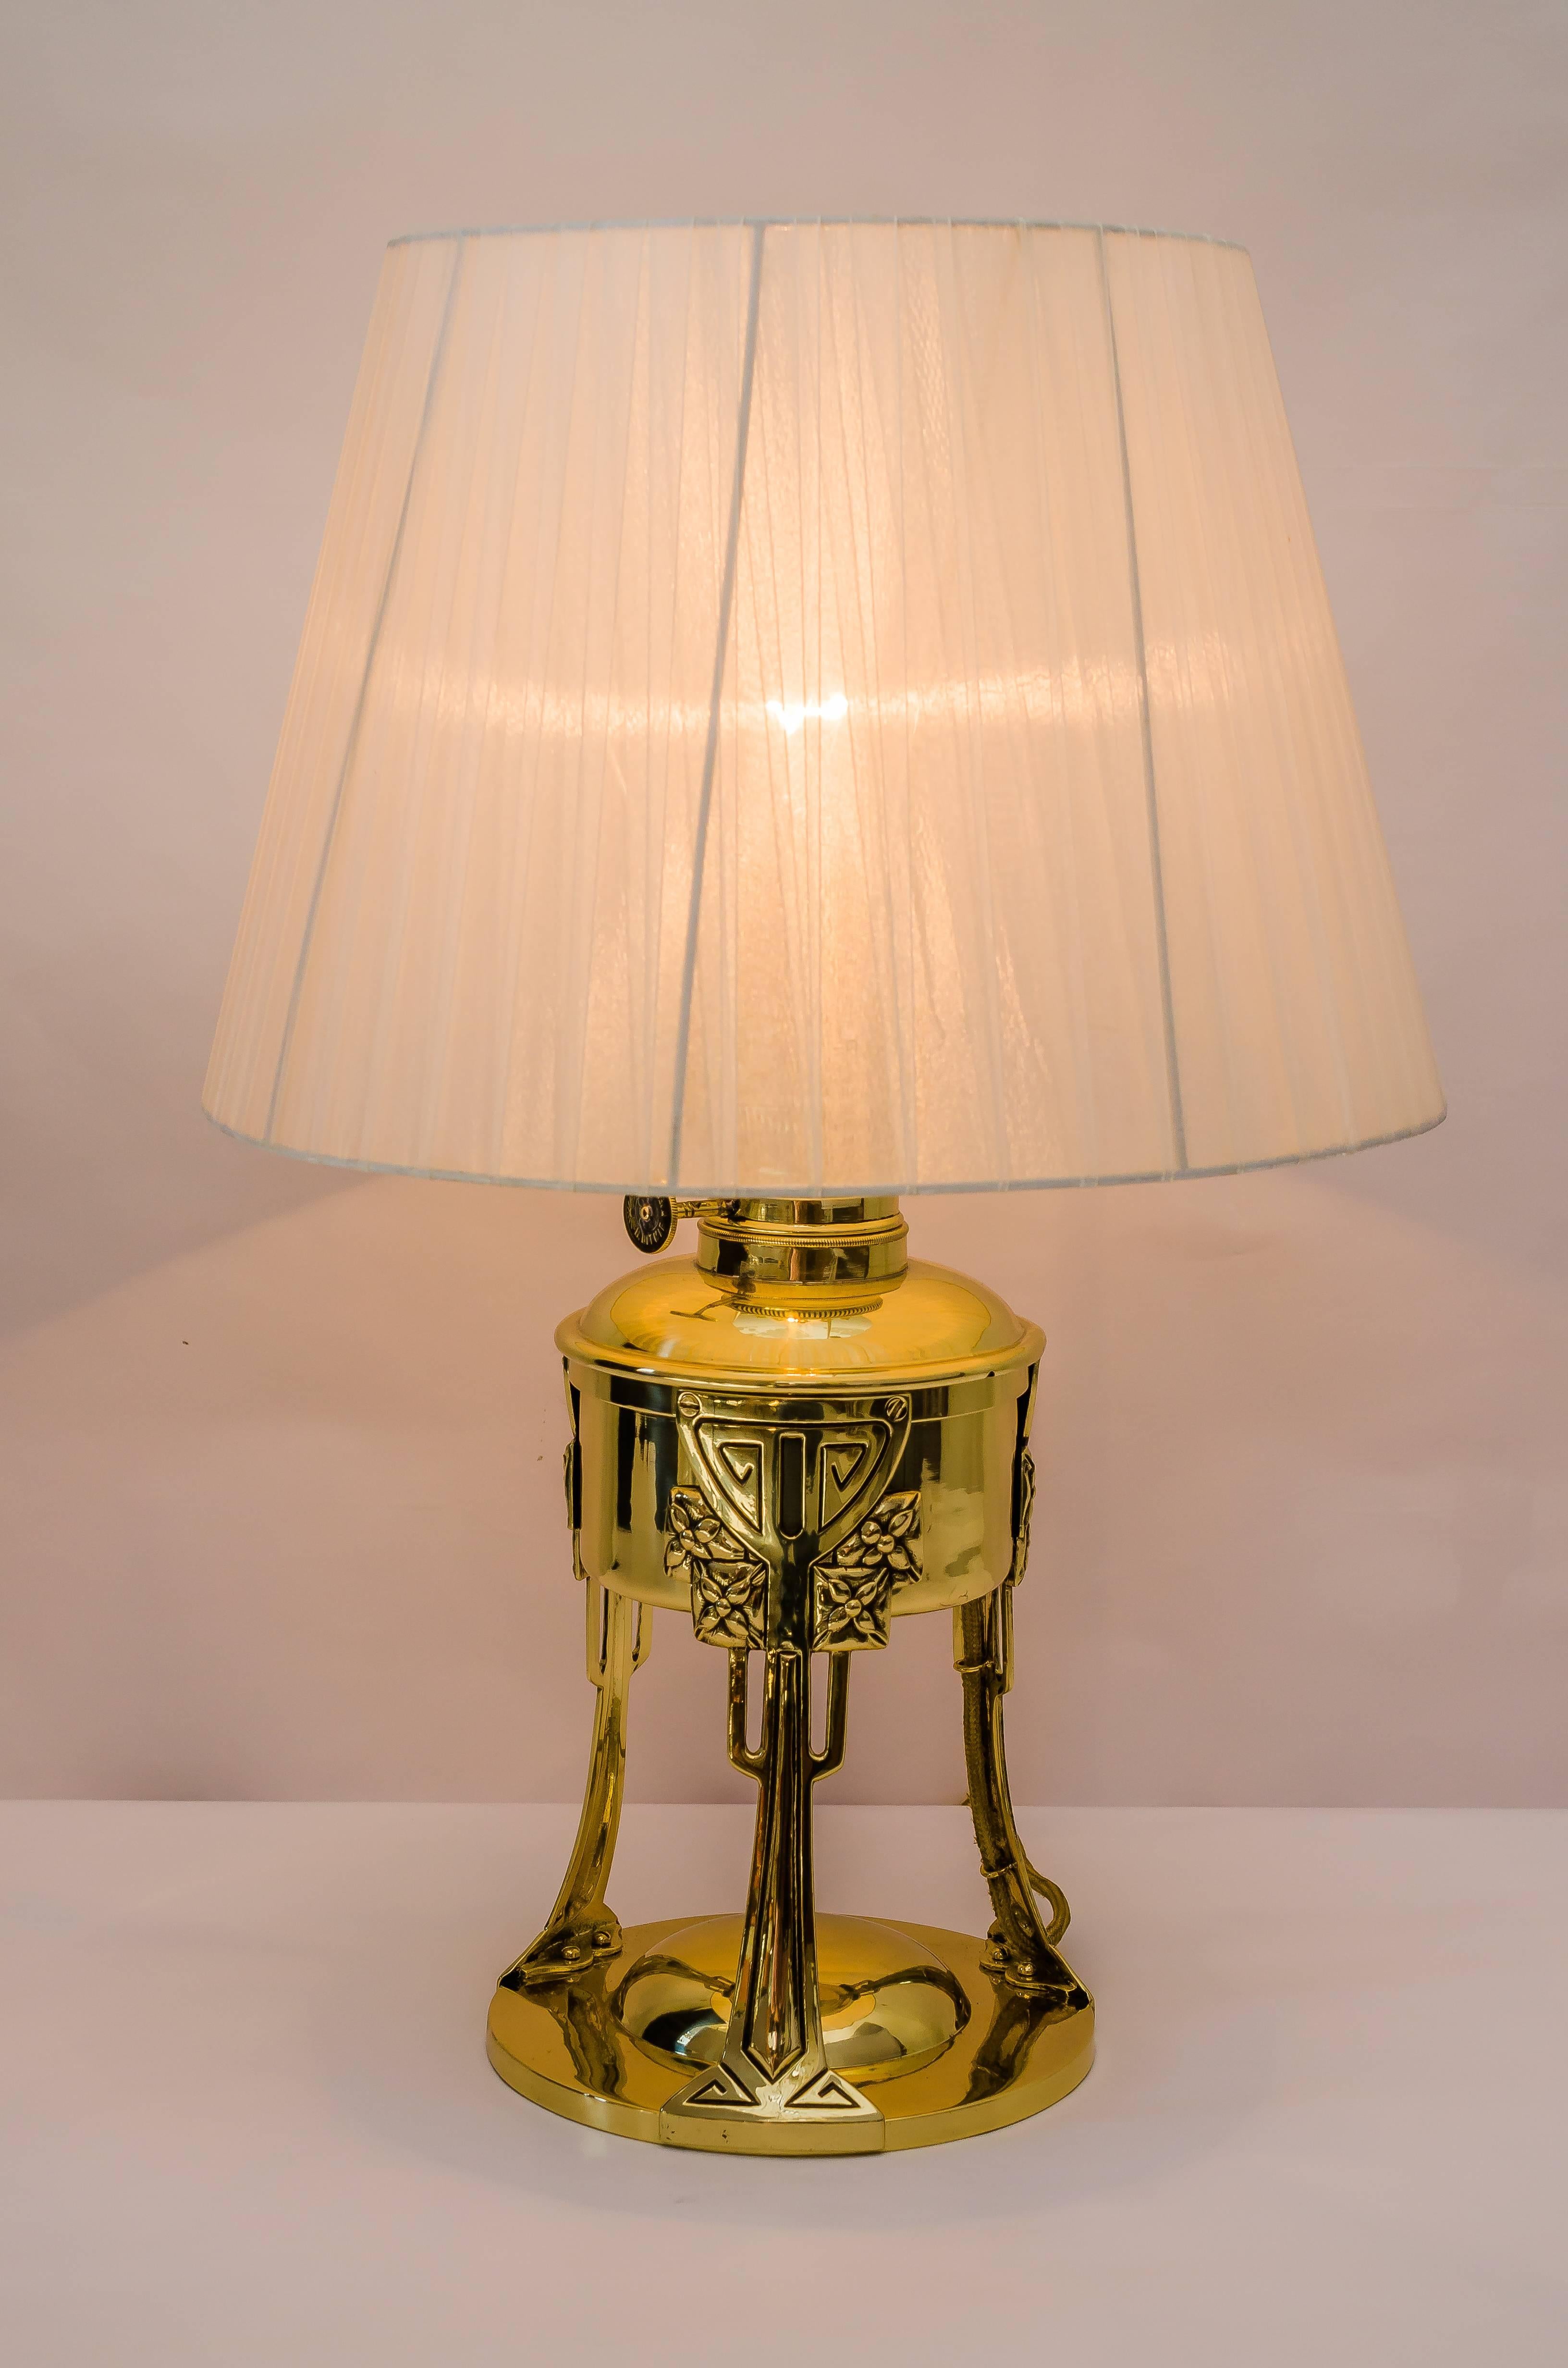 Lampe de table Jugendstil avec abat-jour en tissu, 1907
Polis et émaillés au four
Abat-jour en tissu remplacé (neuf).
 